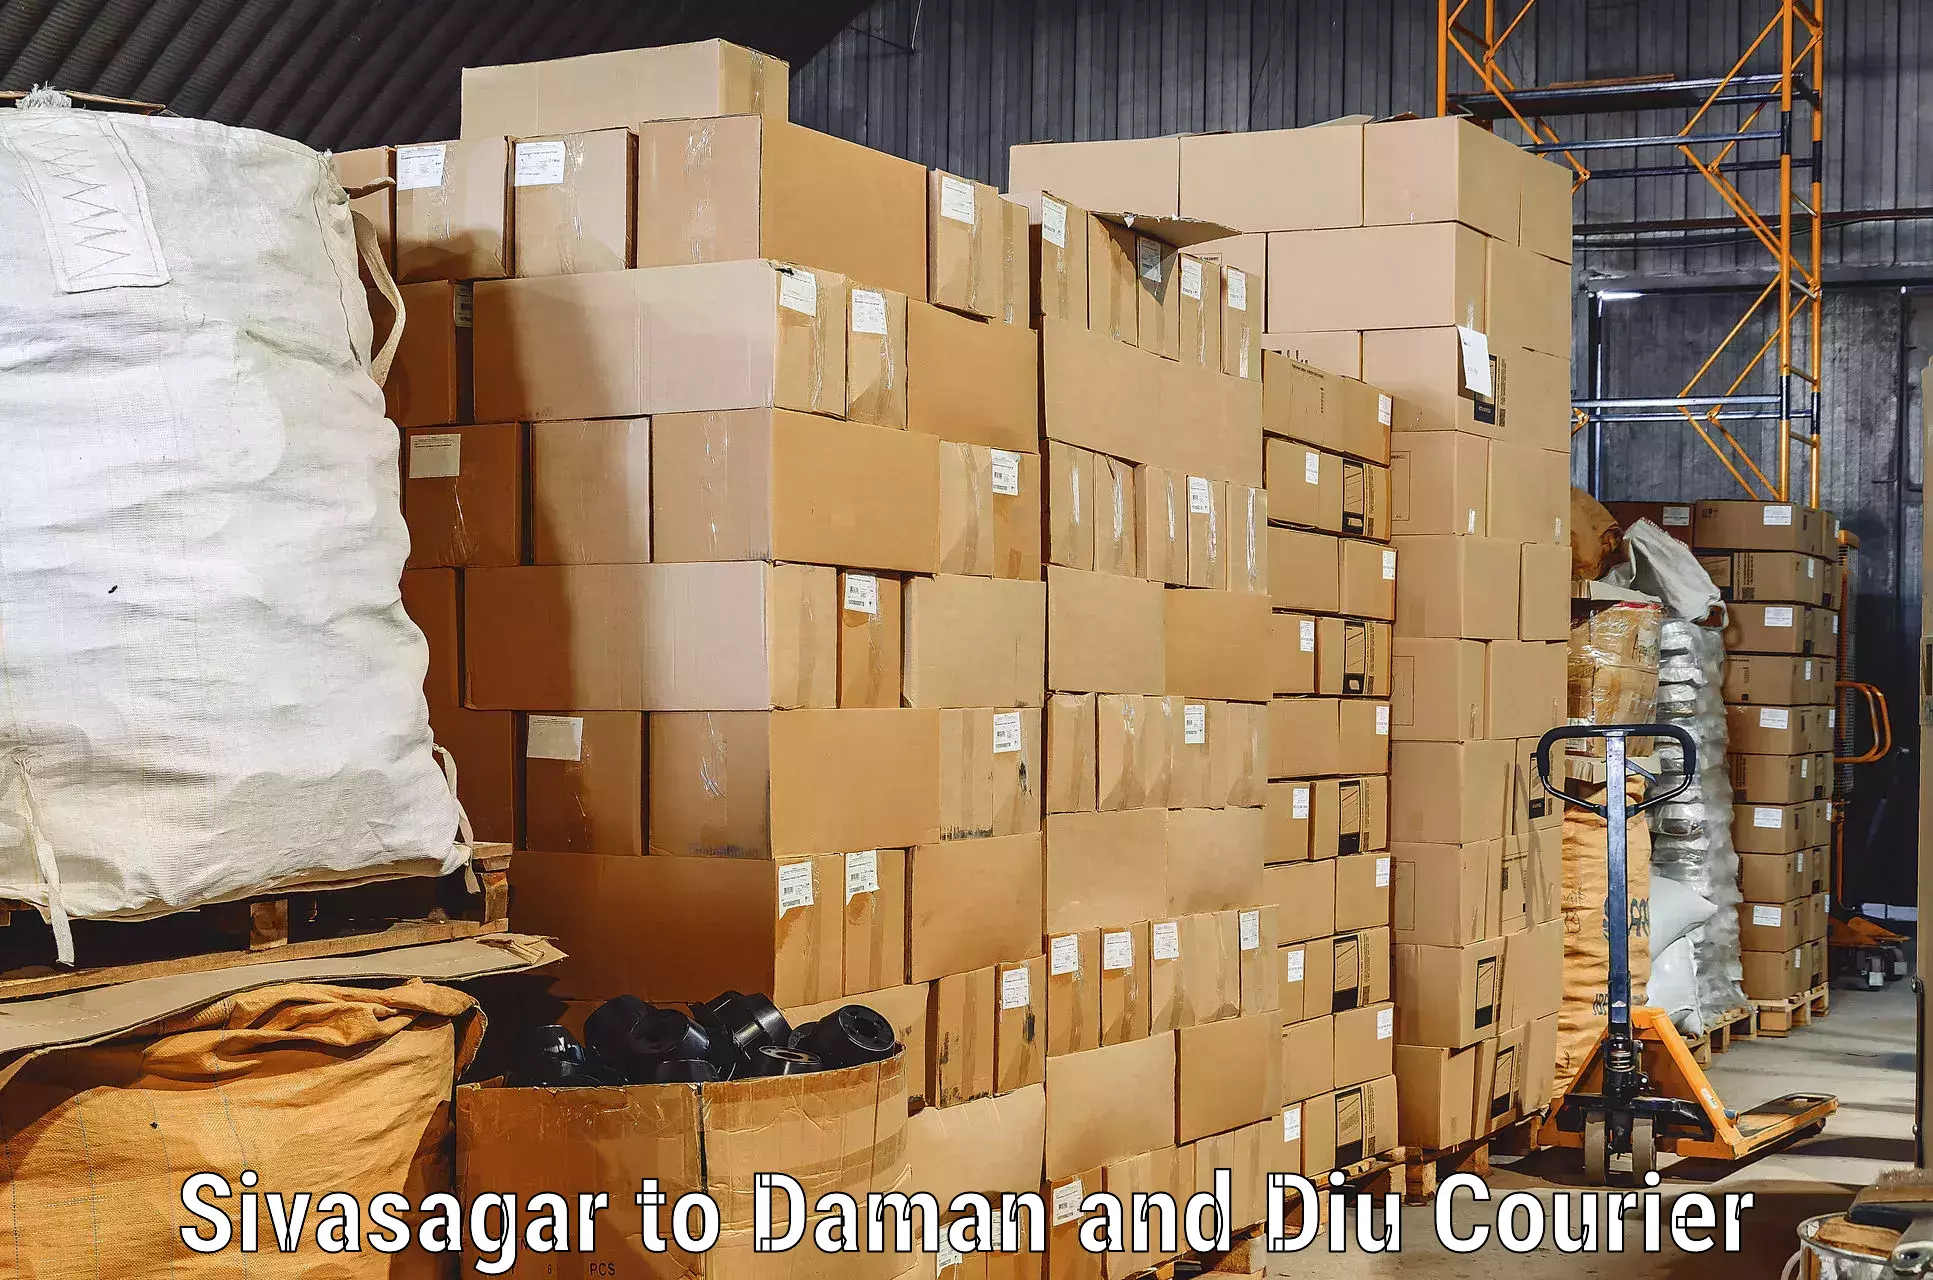 Reliable movers Sivasagar to Diu